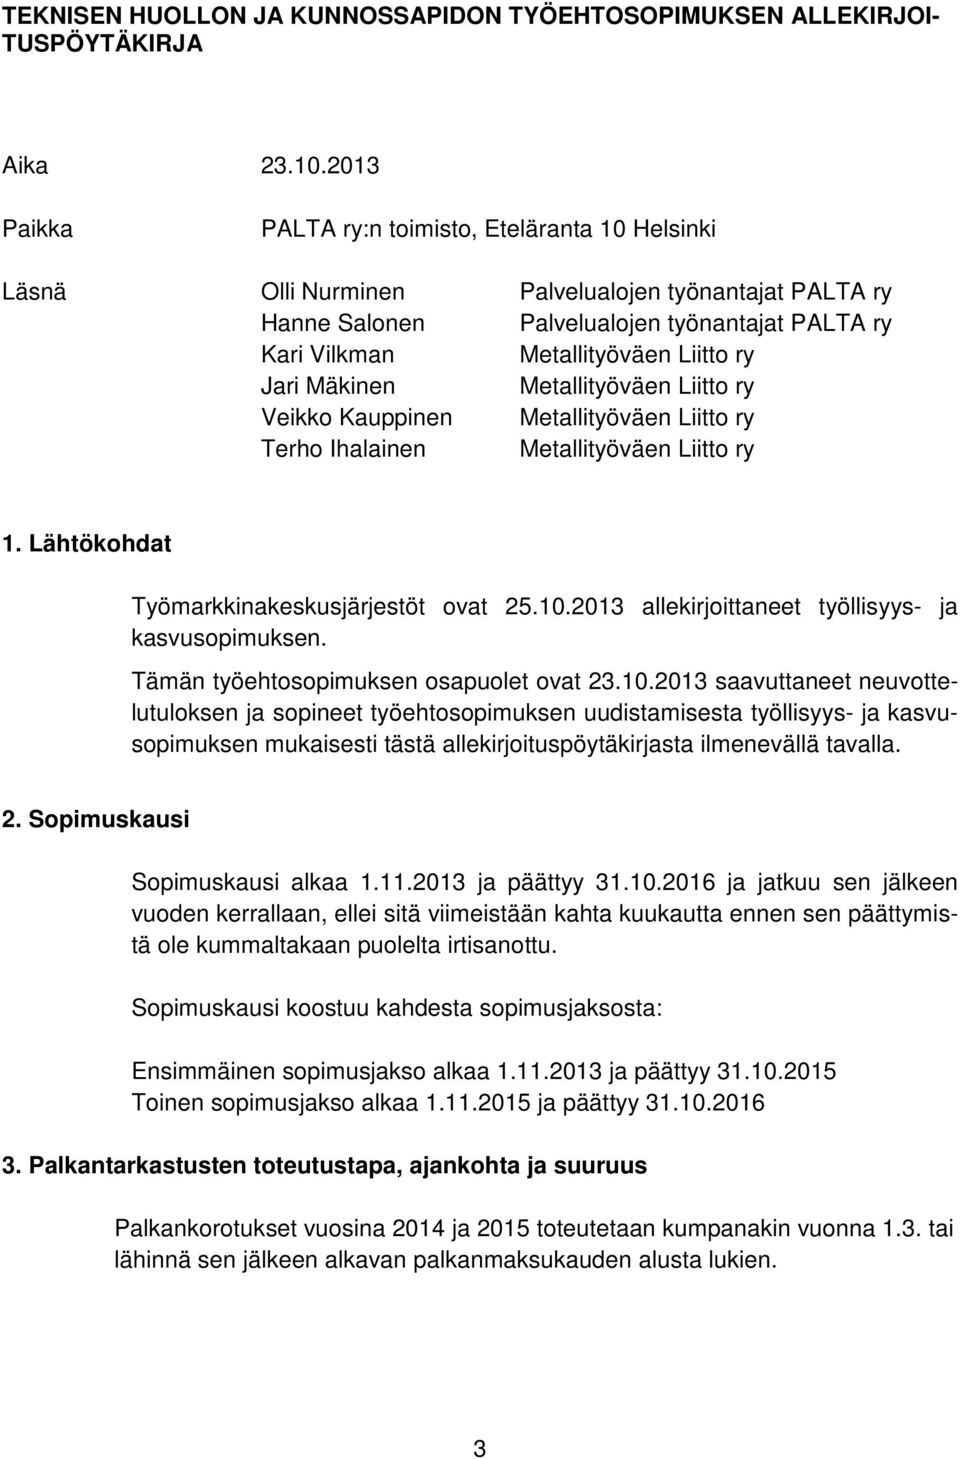 Jari Mäkinen Metallityöväen Liitto ry Veikko Kauppinen Metallityöväen Liitto ry Terho Ihalainen Metallityöväen Liitto ry 1. Lähtökohdat Työmarkkinakeskusjärjestöt ovat 25.10.